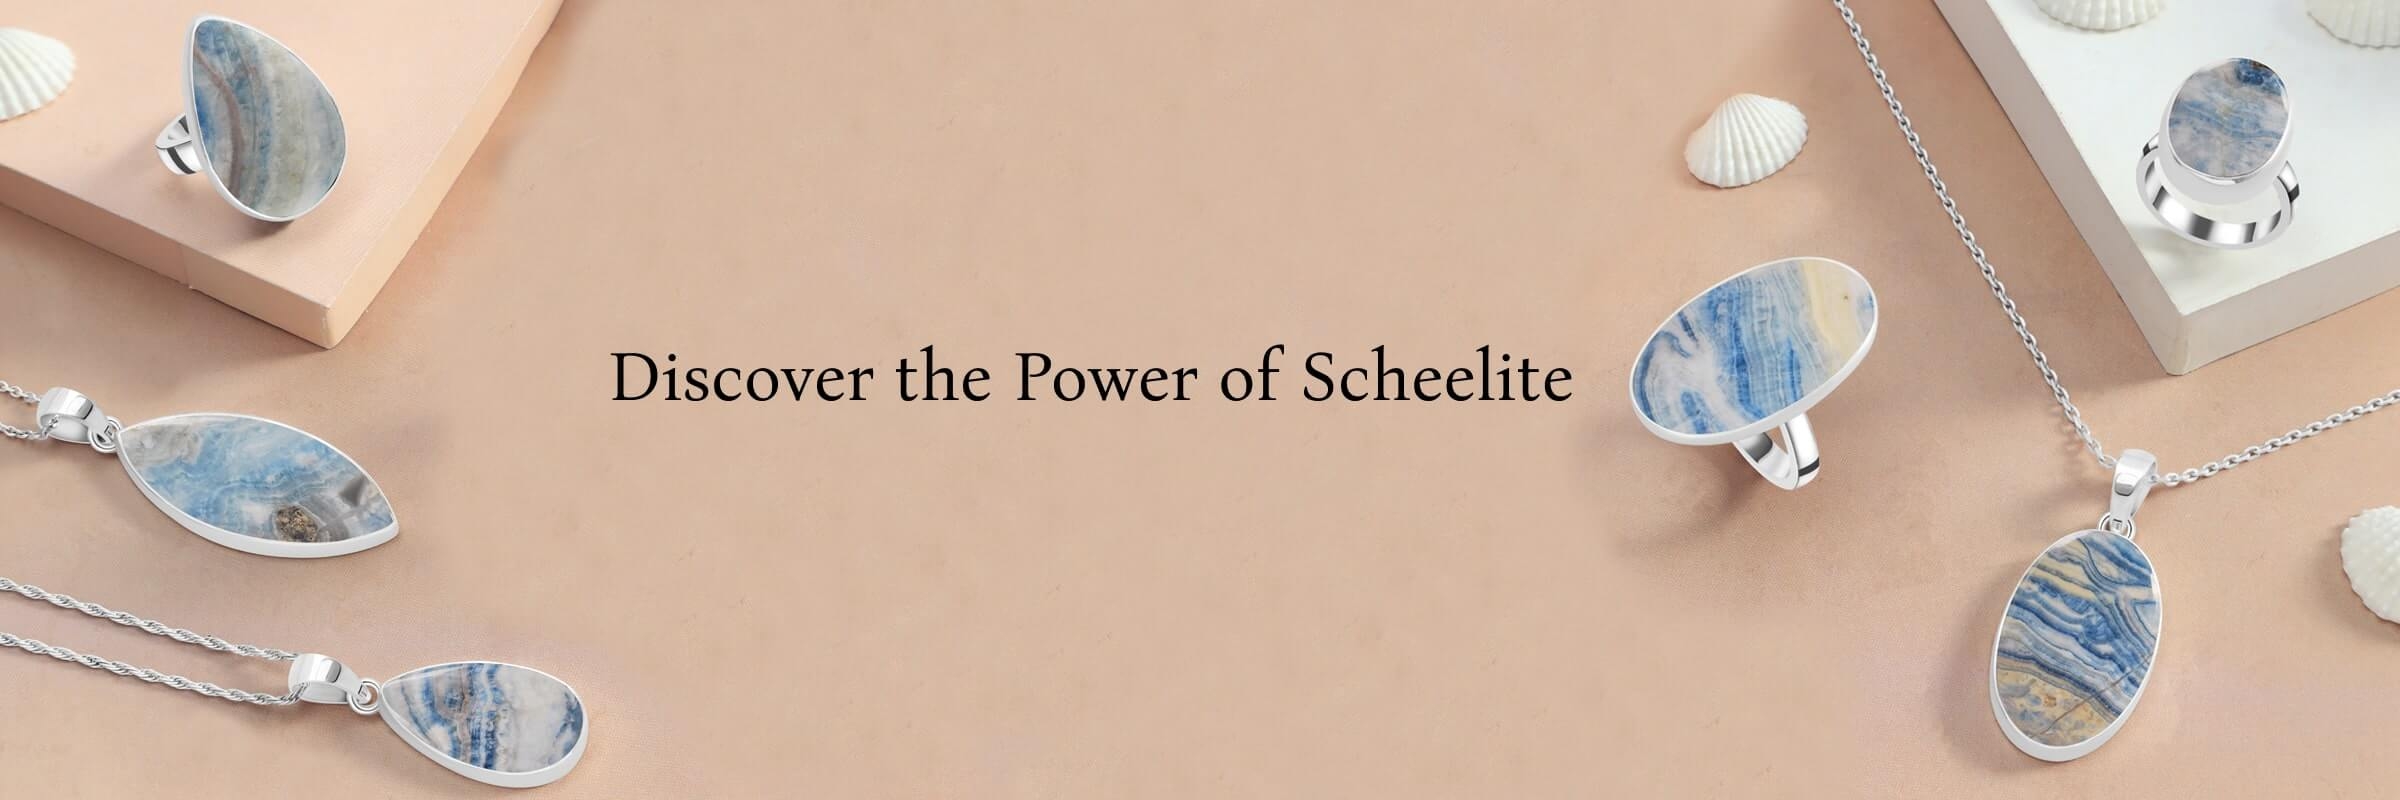 Scheelite Benefits